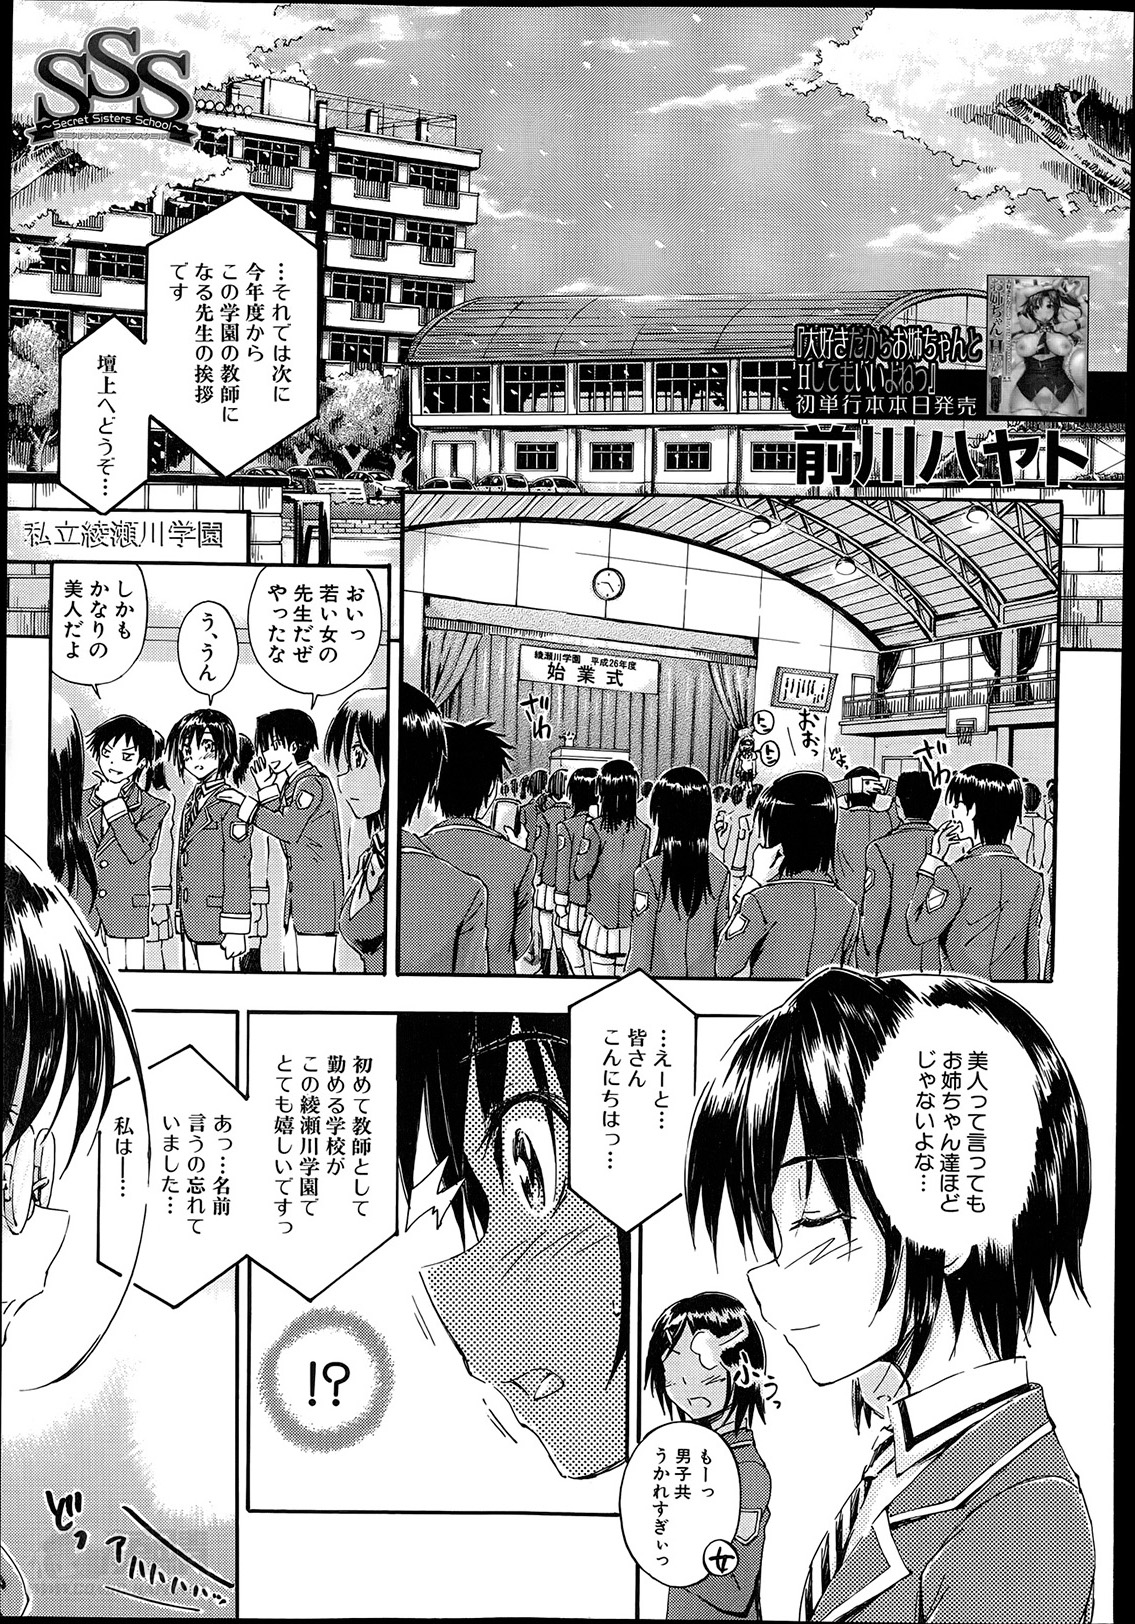 [Maekawa Hayato] SSS Ch.1-3 page 1 full